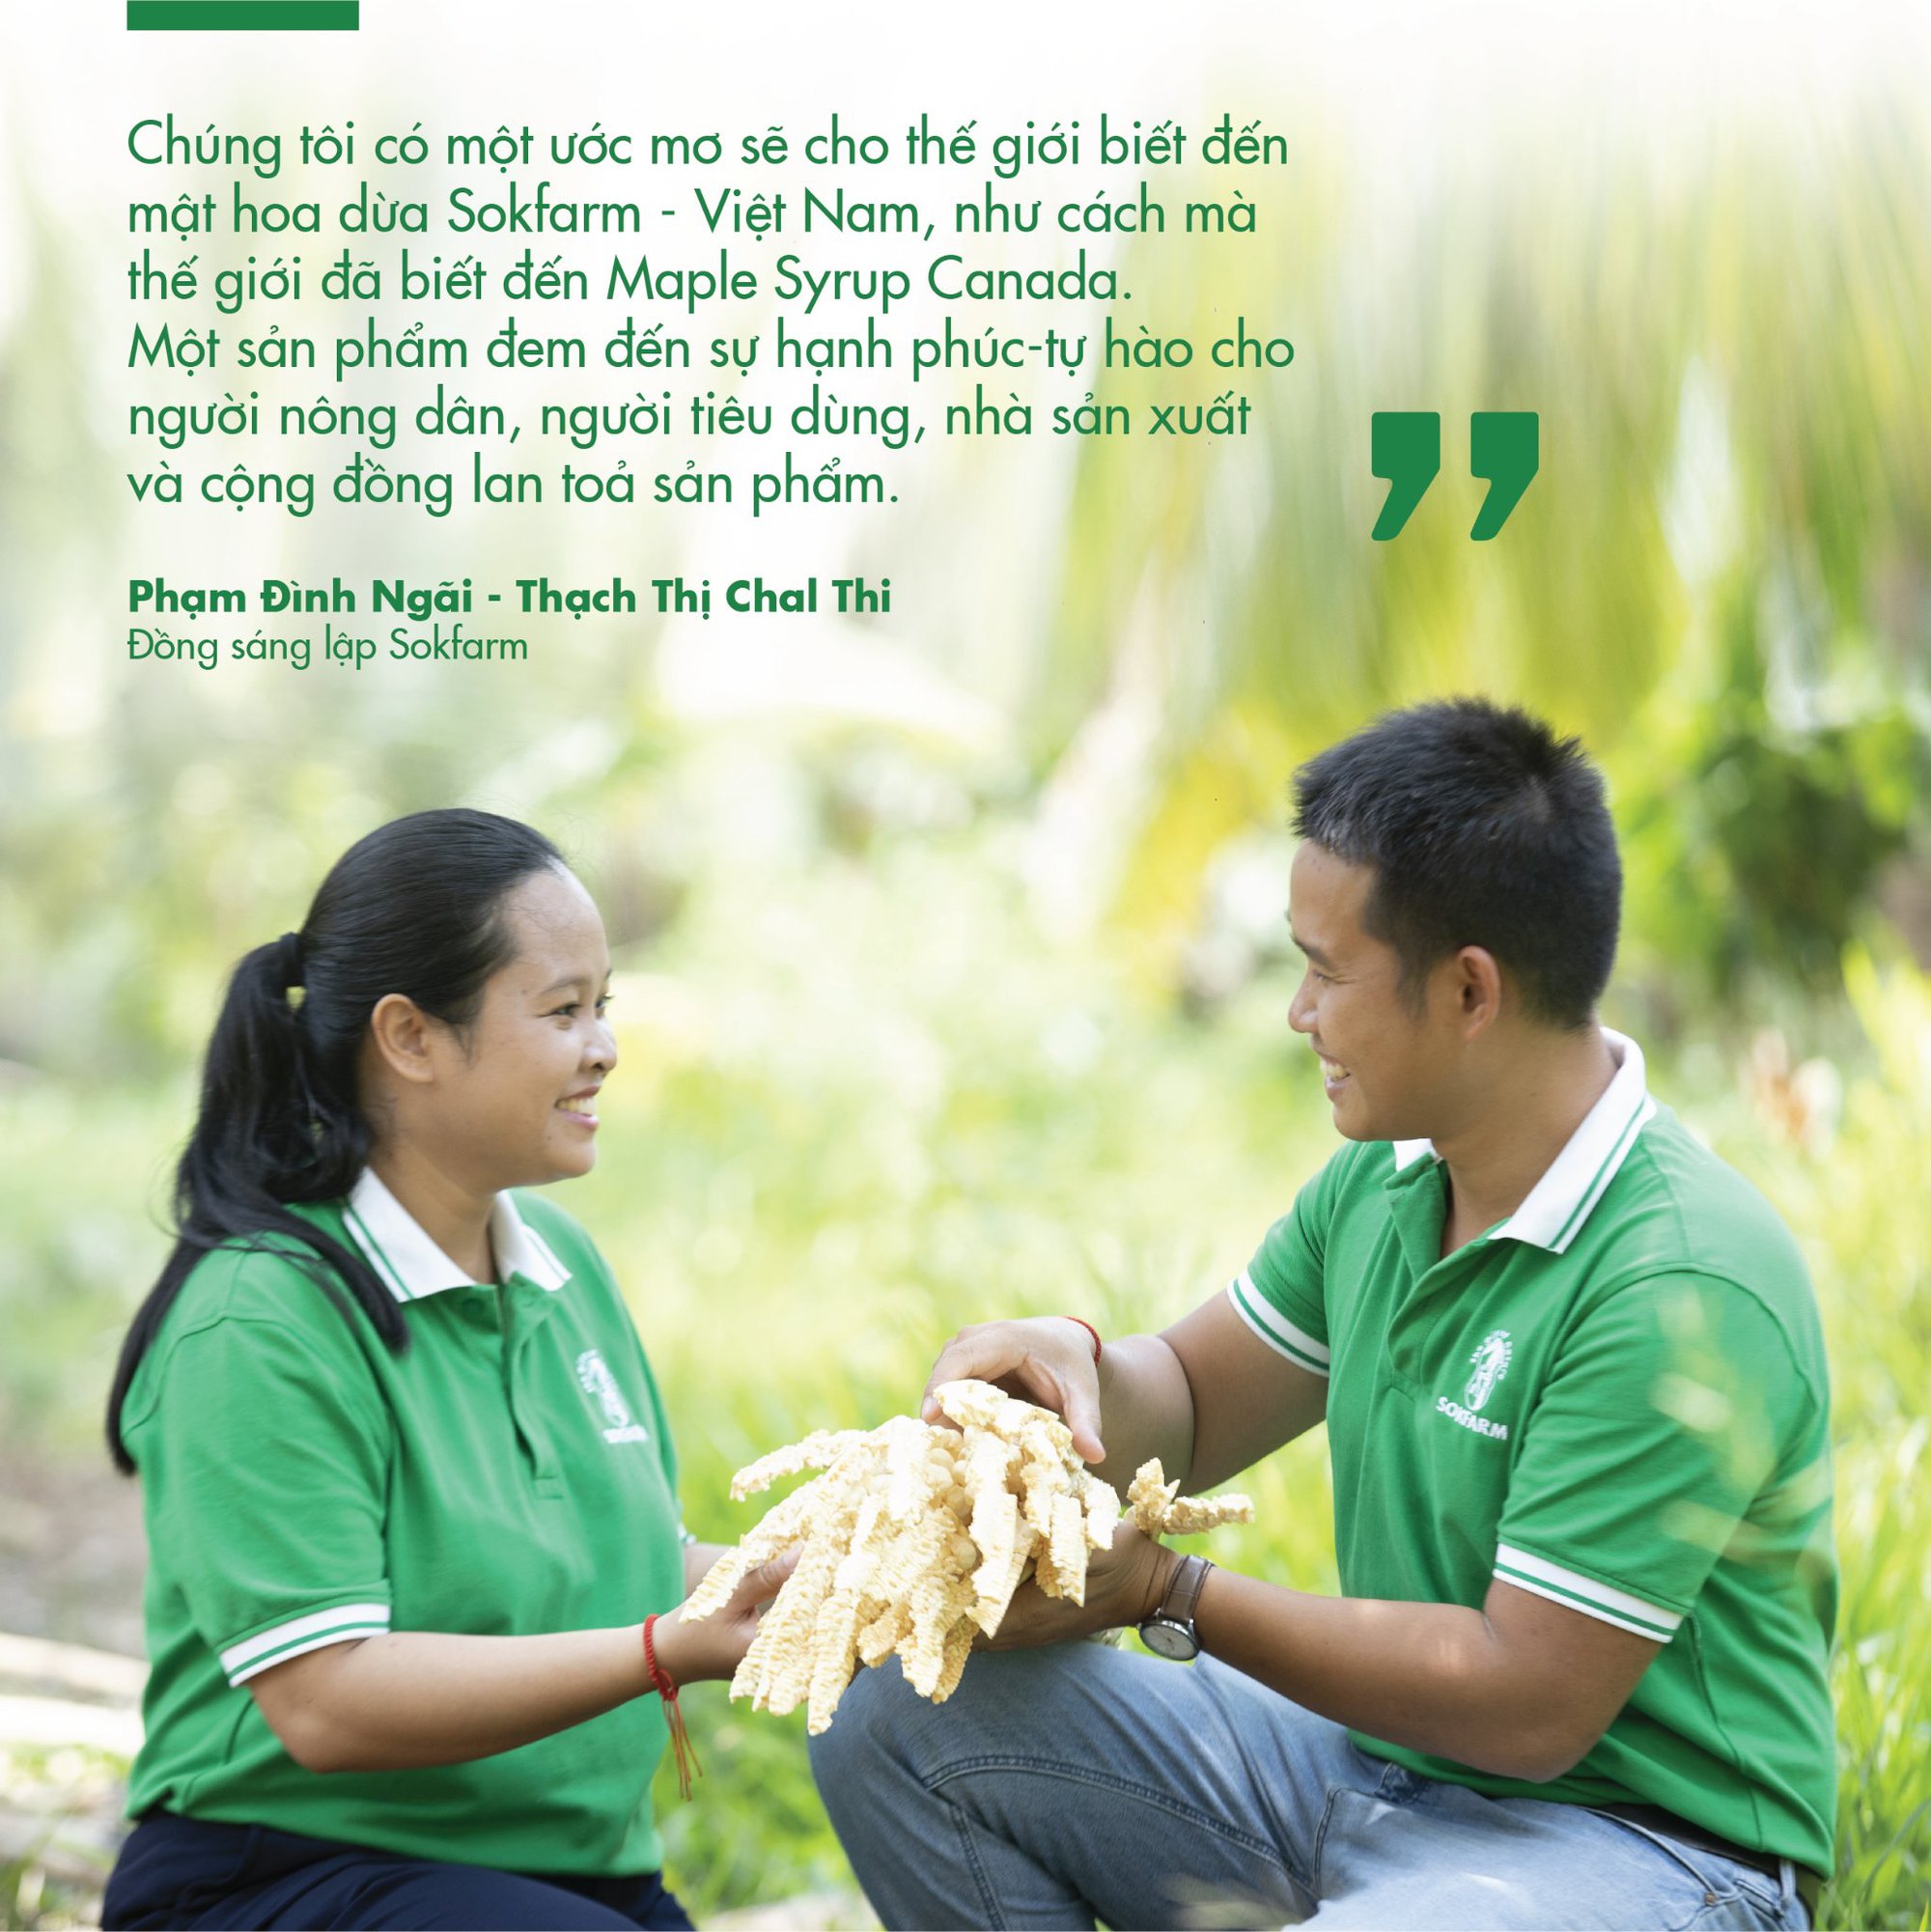 Ứng dụng chế biến sâu sản xuất mật hoa dừa, tạo sinh kế bền vững cho người nông dân - Ảnh 1.